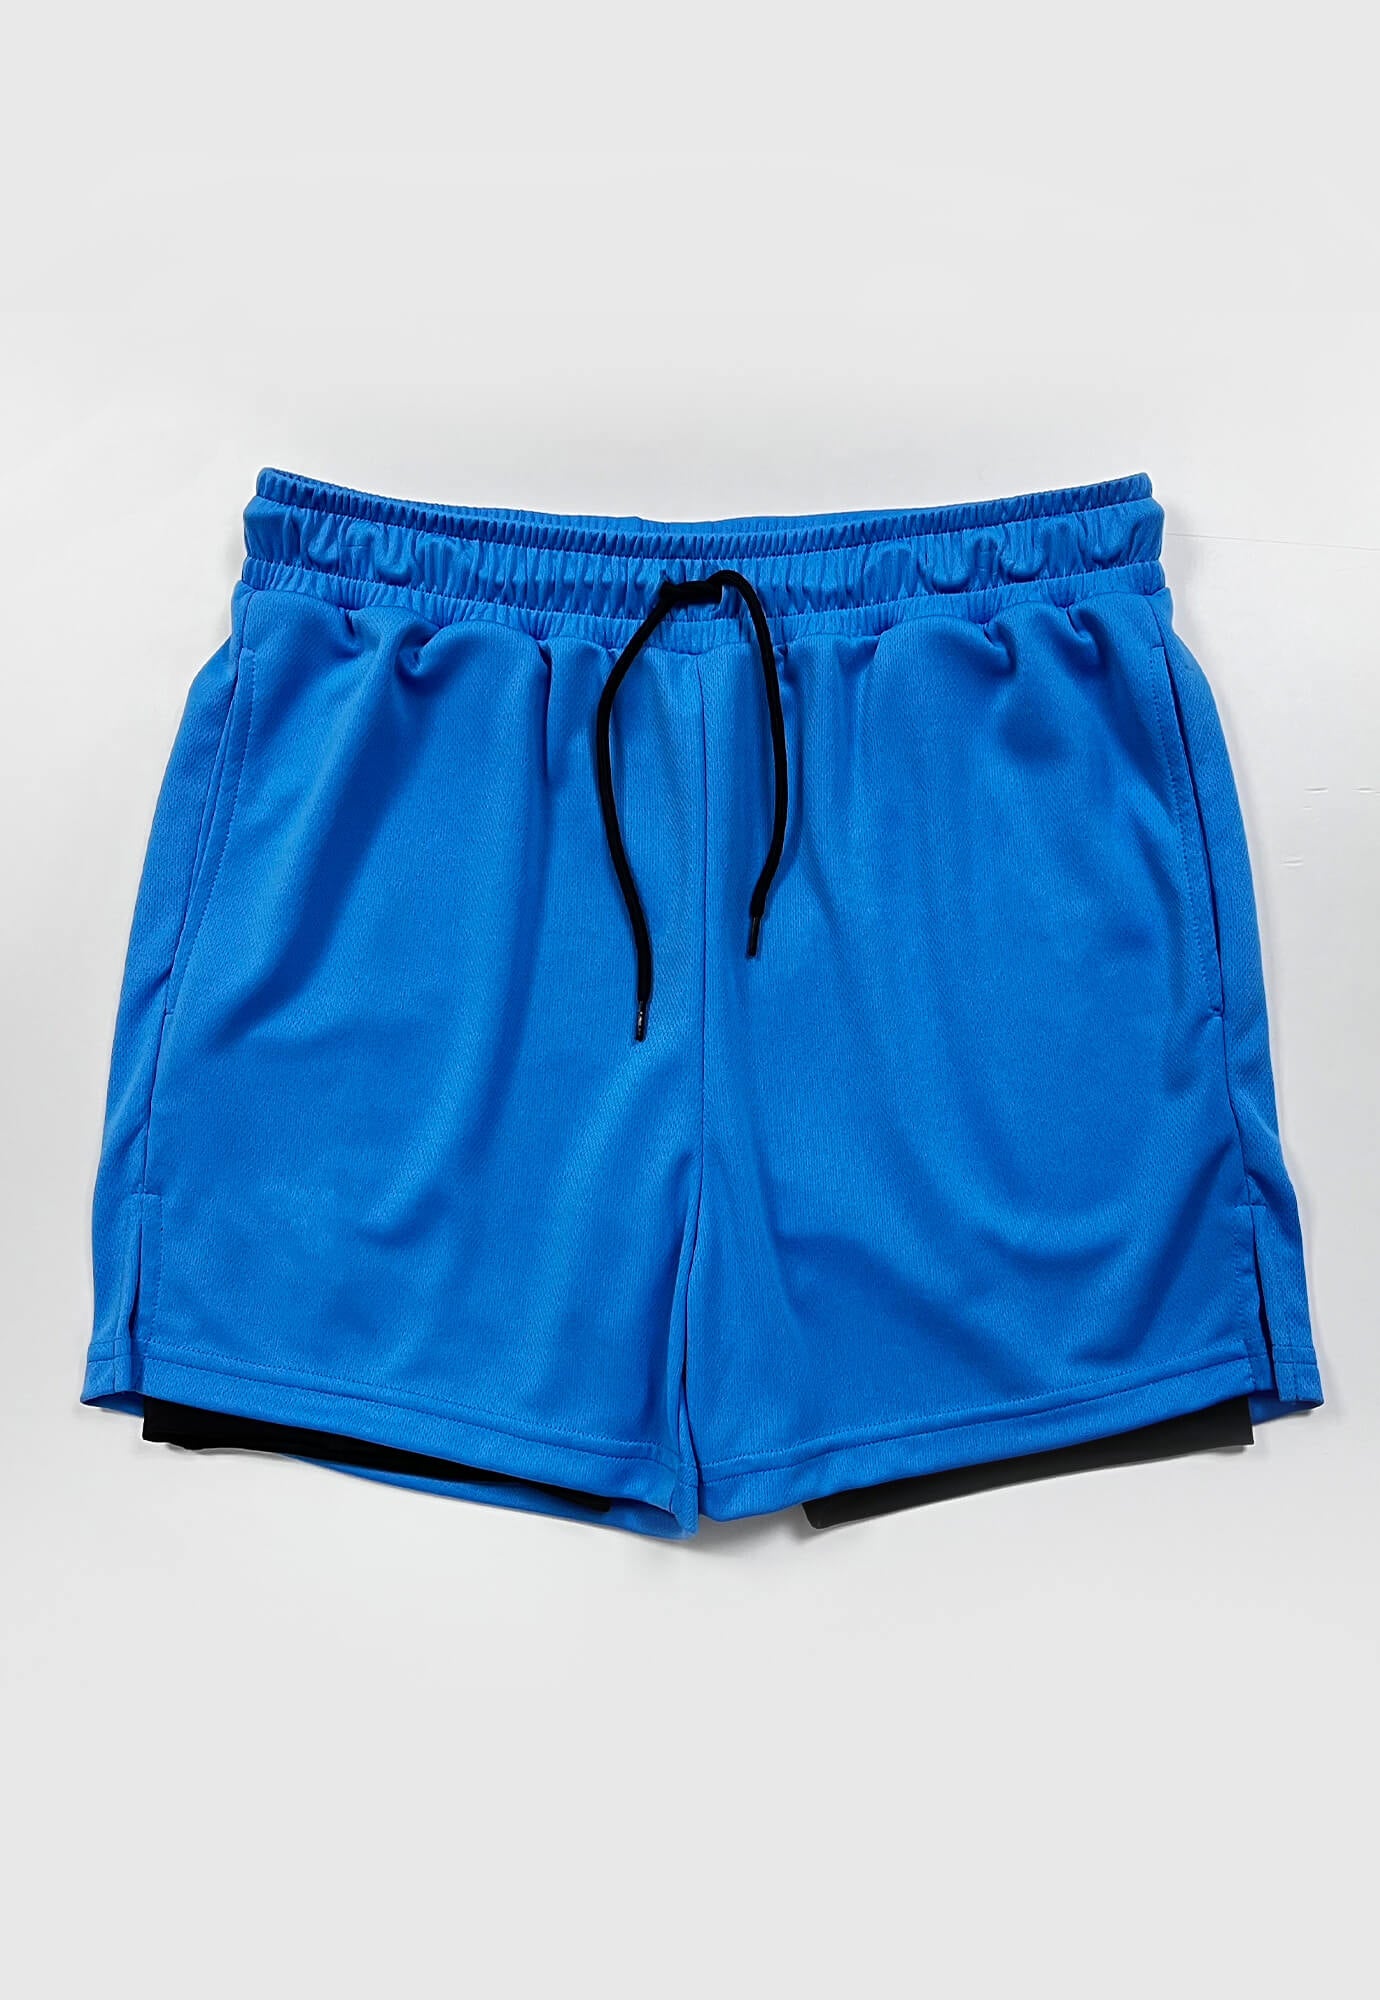 Short deportivo azul neon fondo entero, ciclista interno, cordón ajustable y bolsillos laterales para hombre